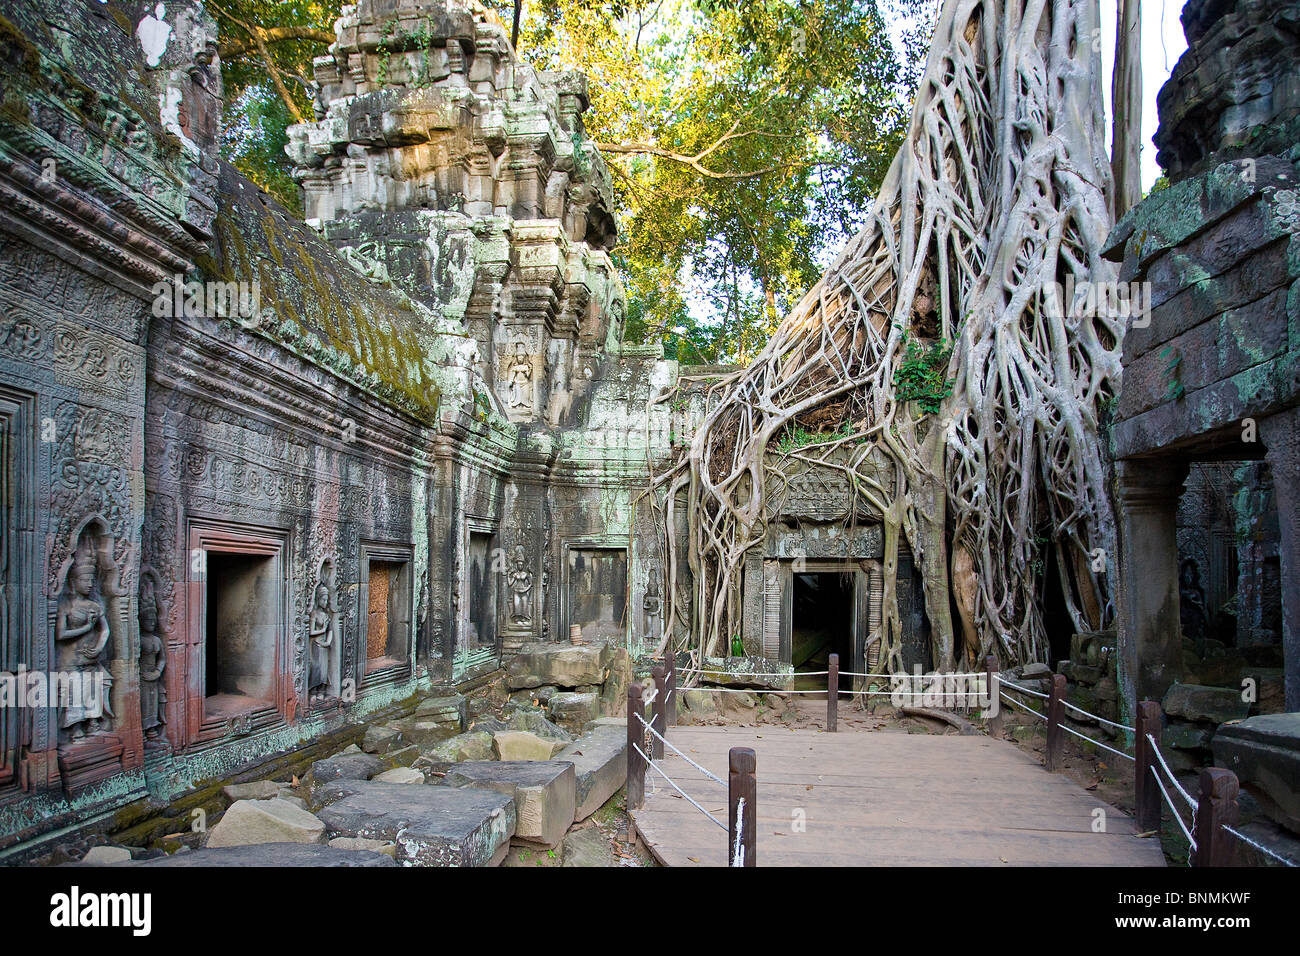 Extrême-Orient Asie Cambodge Angkor Thom le bouddhisme religion temple site culturel pierre culture chiffres chiffres patrimoine culturel mondial Banque D'Images